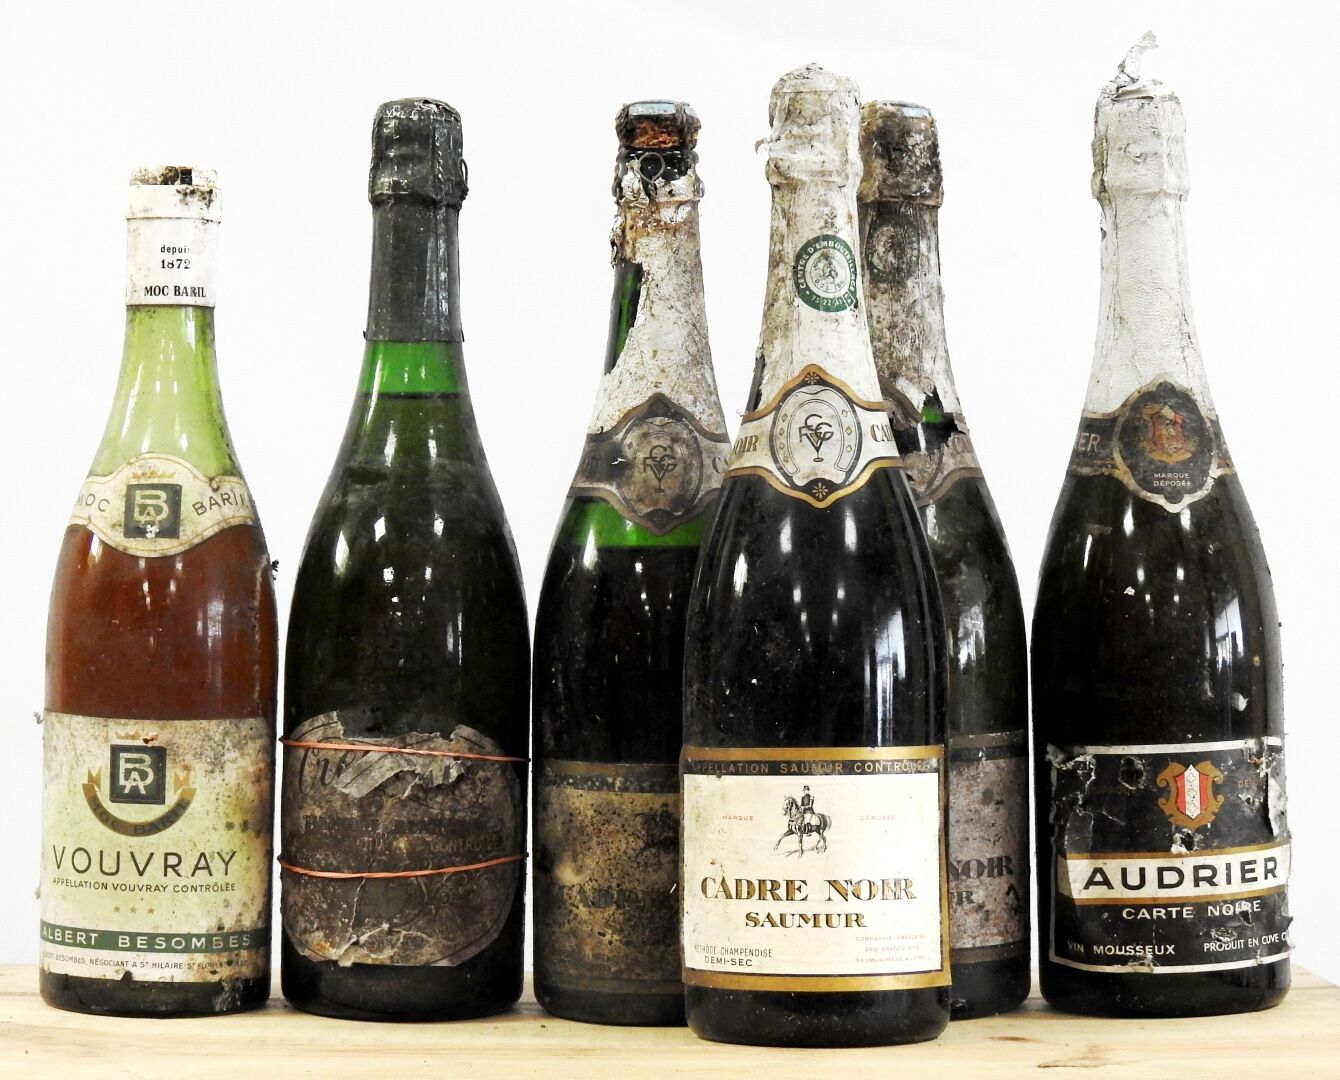 Null 6 bottles

1 Vouvray - Albert Besombes

1 Crémieux

3 Cadre Noir Saumur 

1&hellip;